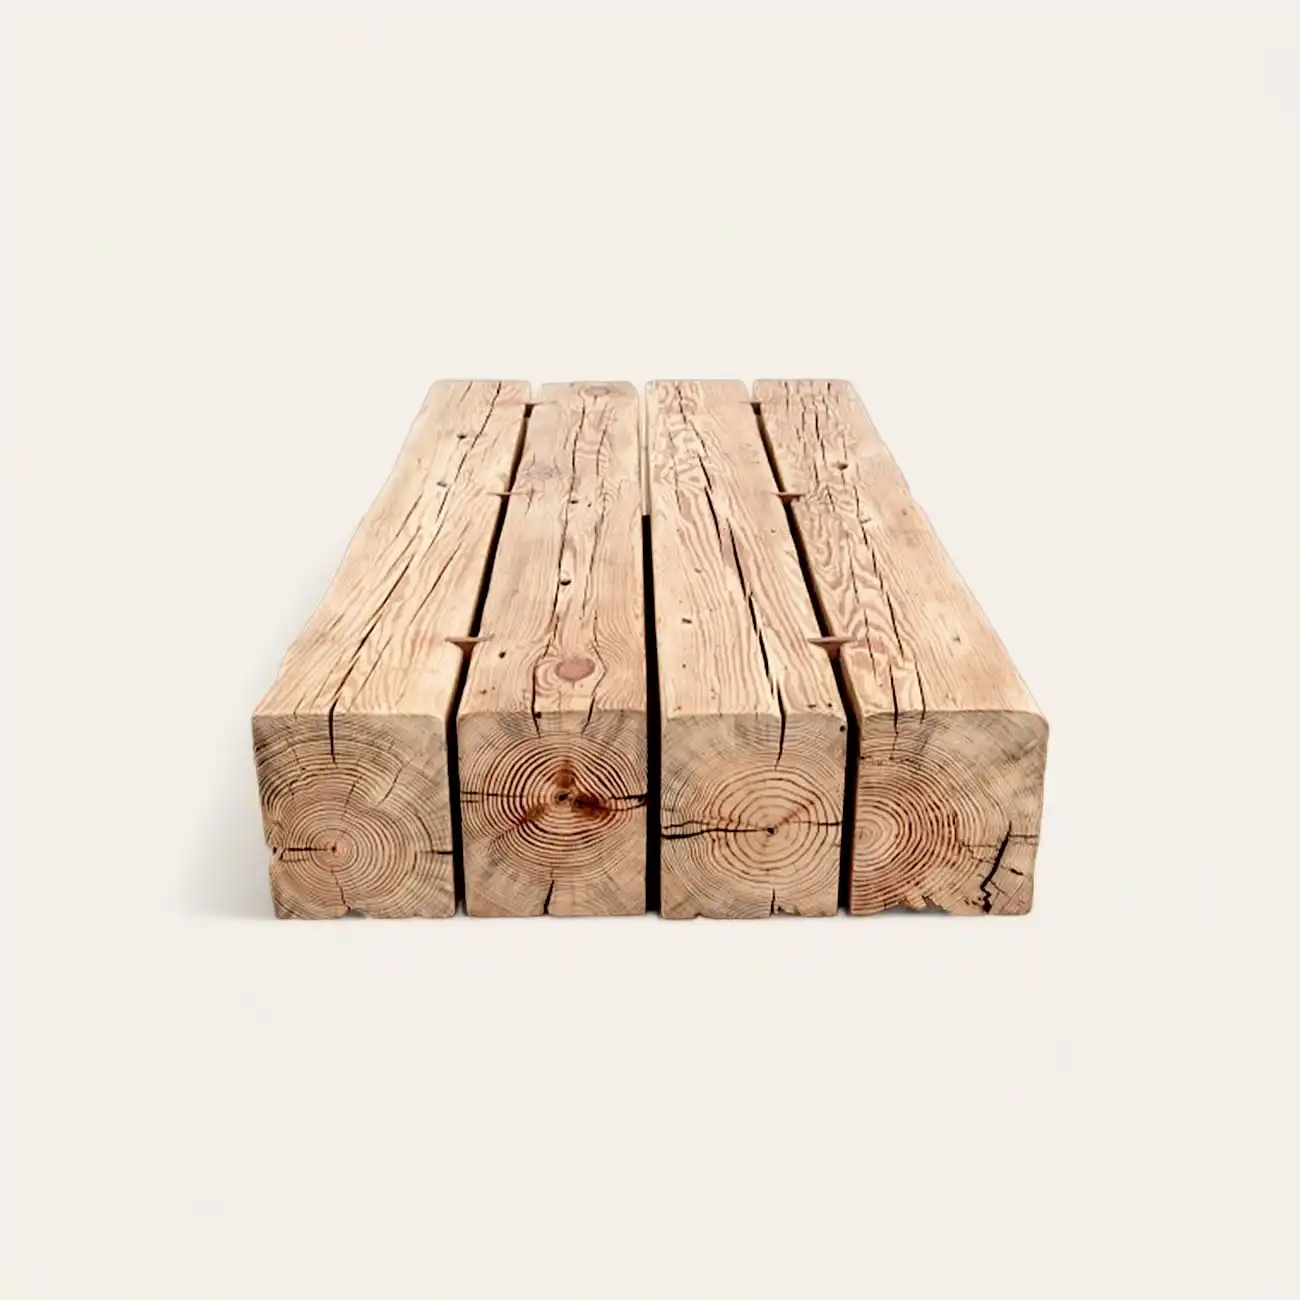  Une planche de vieux bois sur fond blanc. 